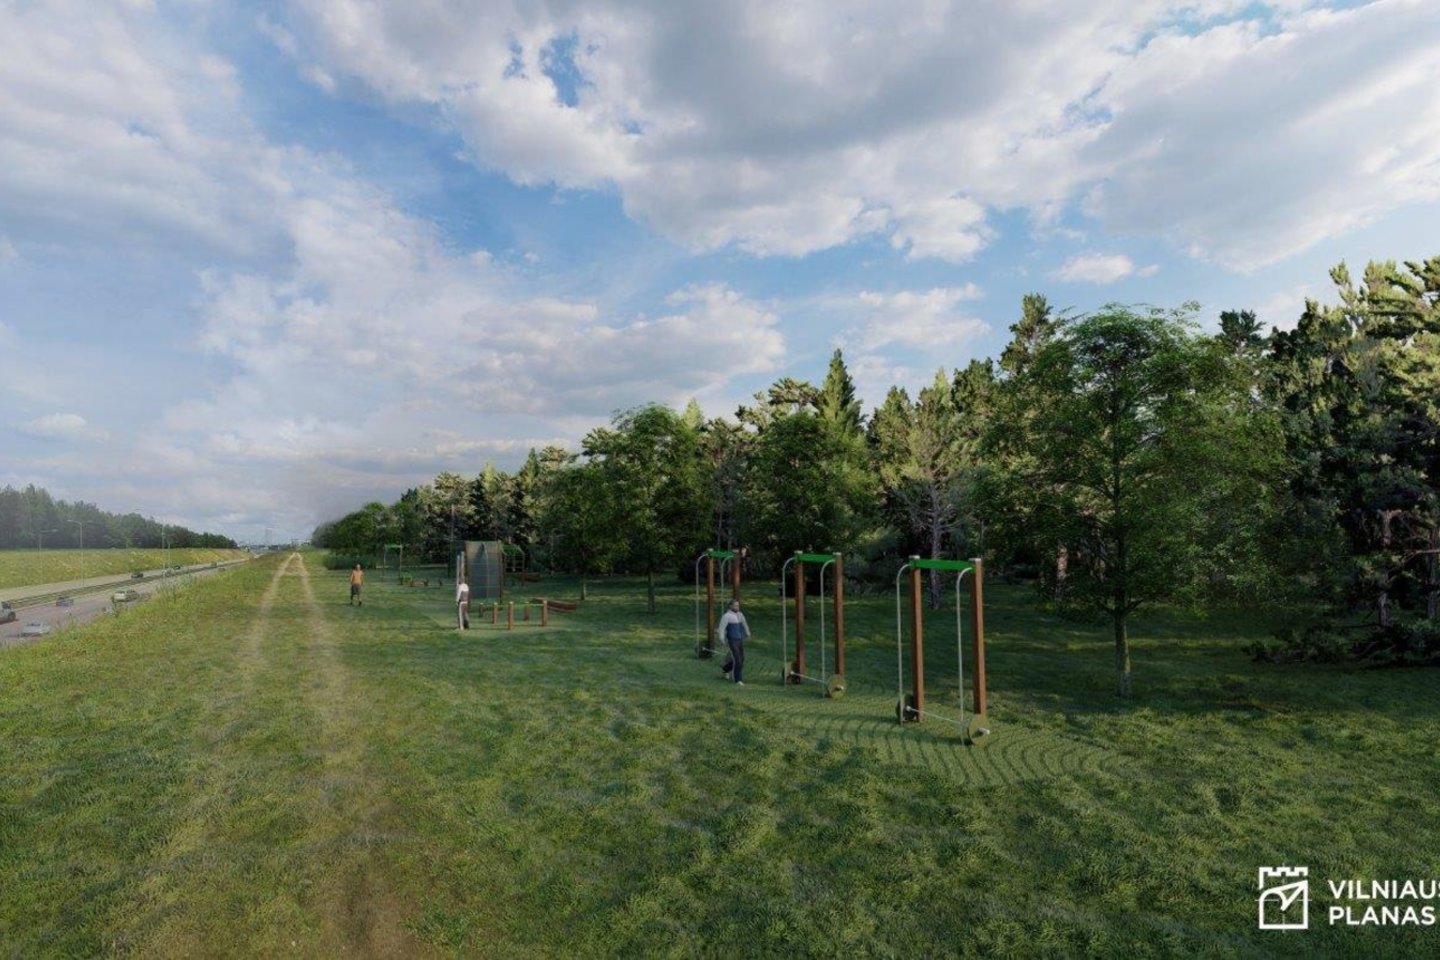 Karoliniškėse formuojamame parke Vilniaus miesto architektai siūlo naujus sprendimus – atvirą erdvę laisvalaikiui bei ugdymui.<br>SĮ „Vilniaus plano“ vizual.